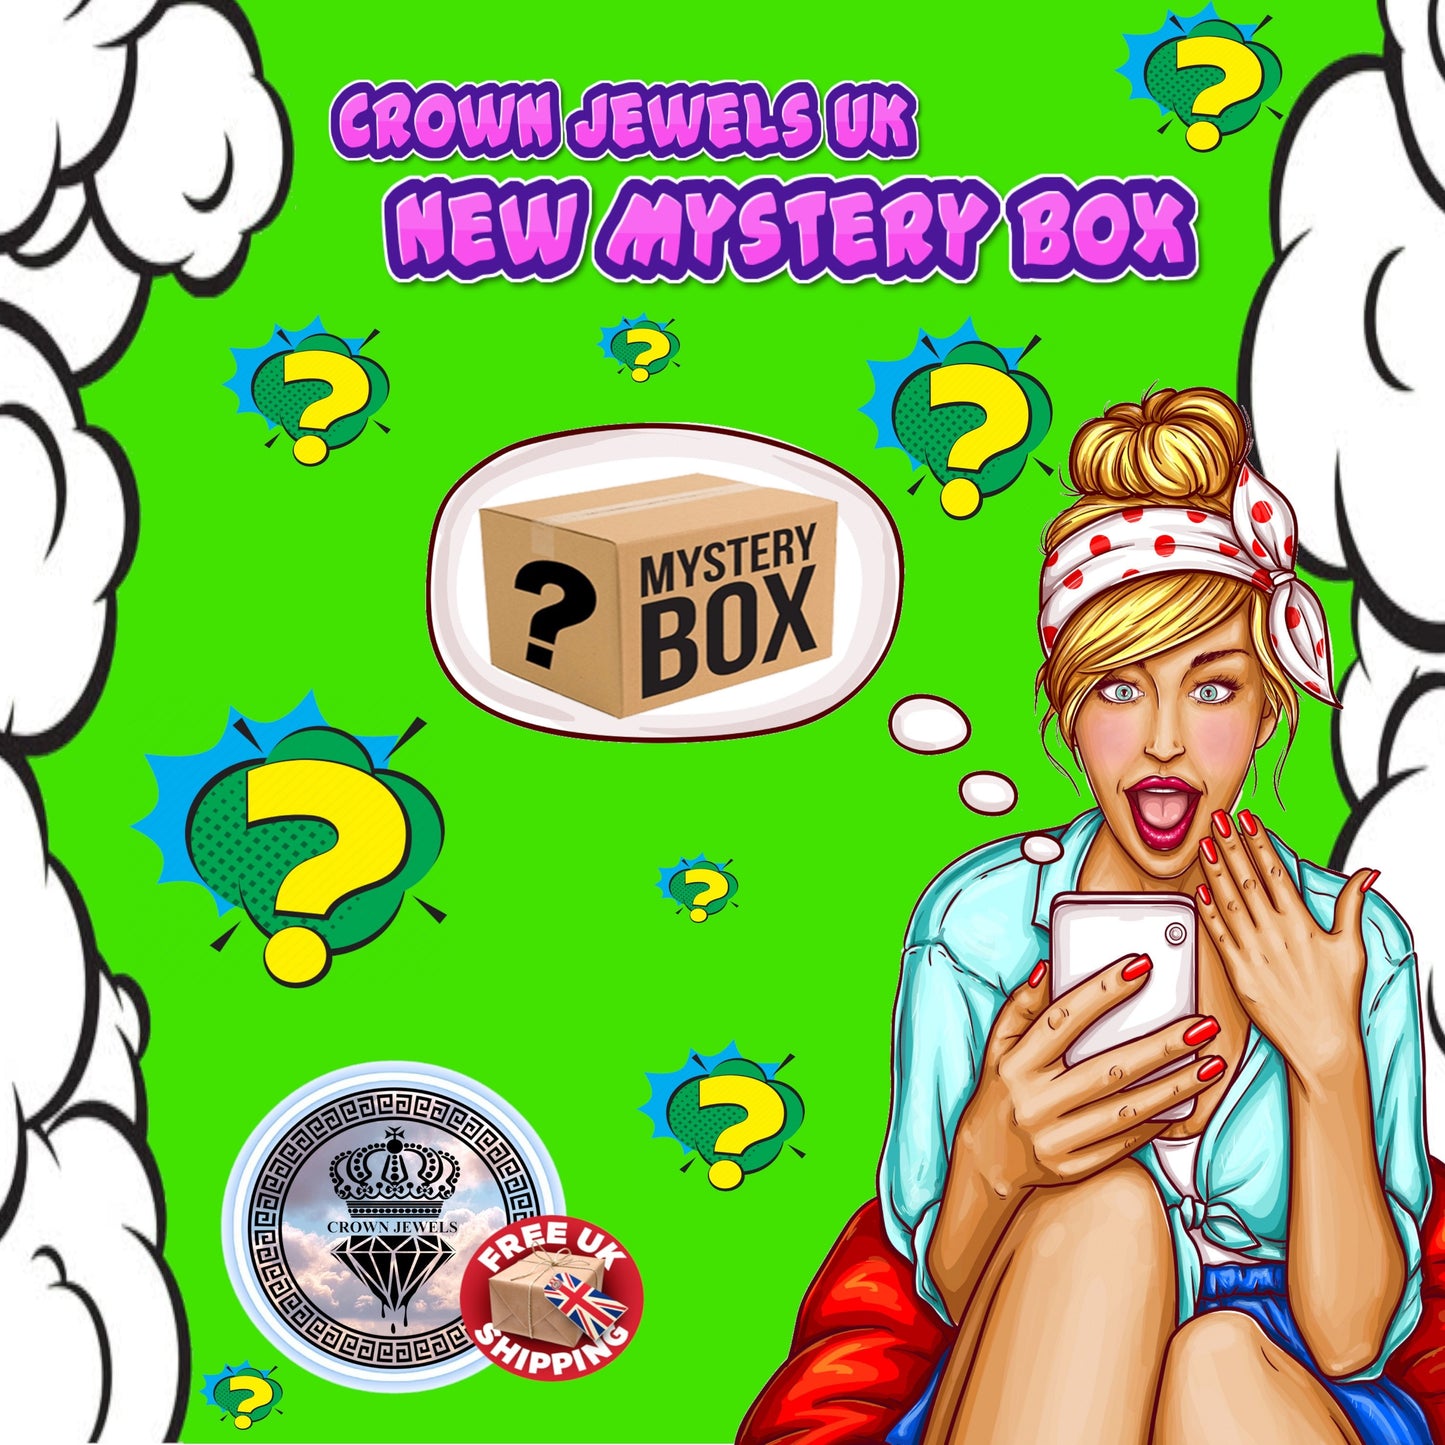 Medium mystery box / Lucky dip Box / Surprise Box